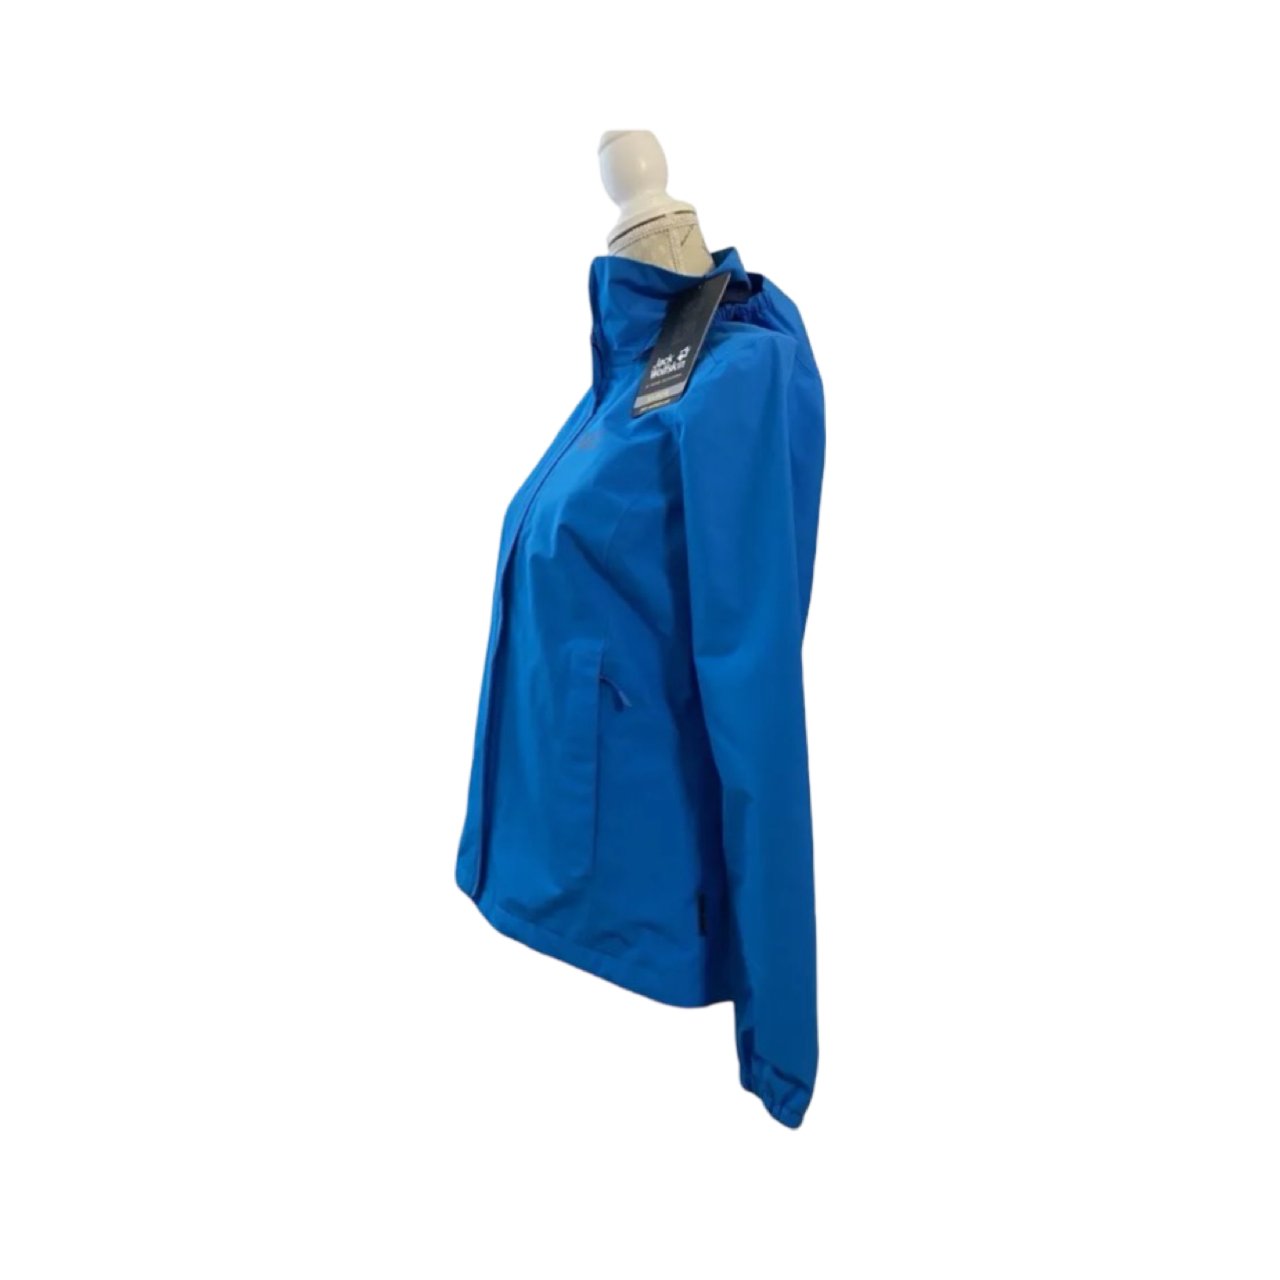 Jack Wolfskin Women Texapore Stormy Point Blue Waterproof Hooded Jacket - Soul and Sense Streetwear